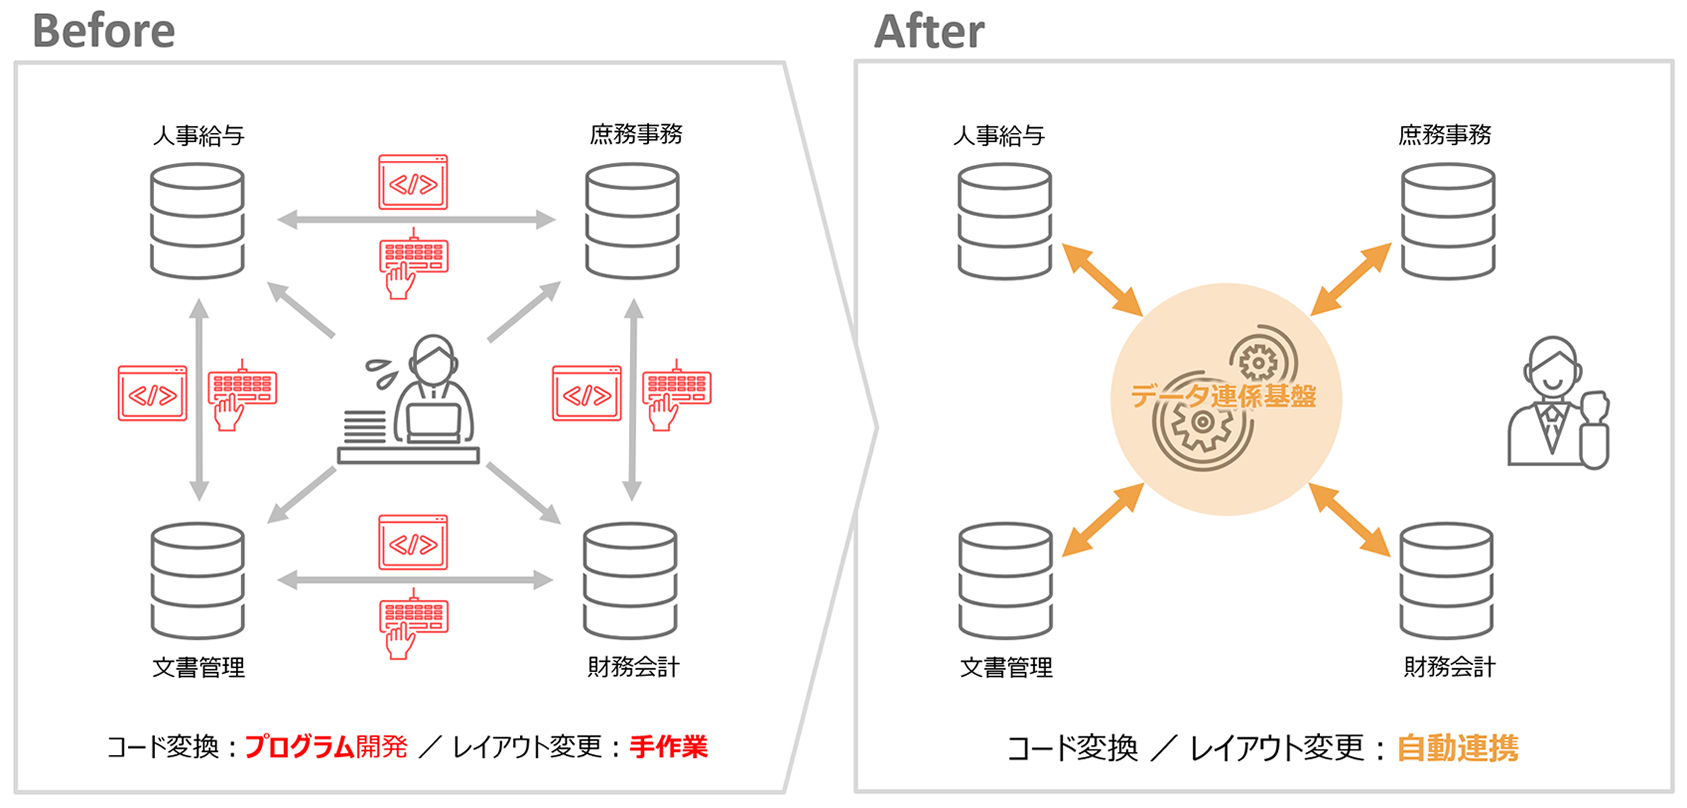 システム間でのデータ連携の自動化【Before・After】